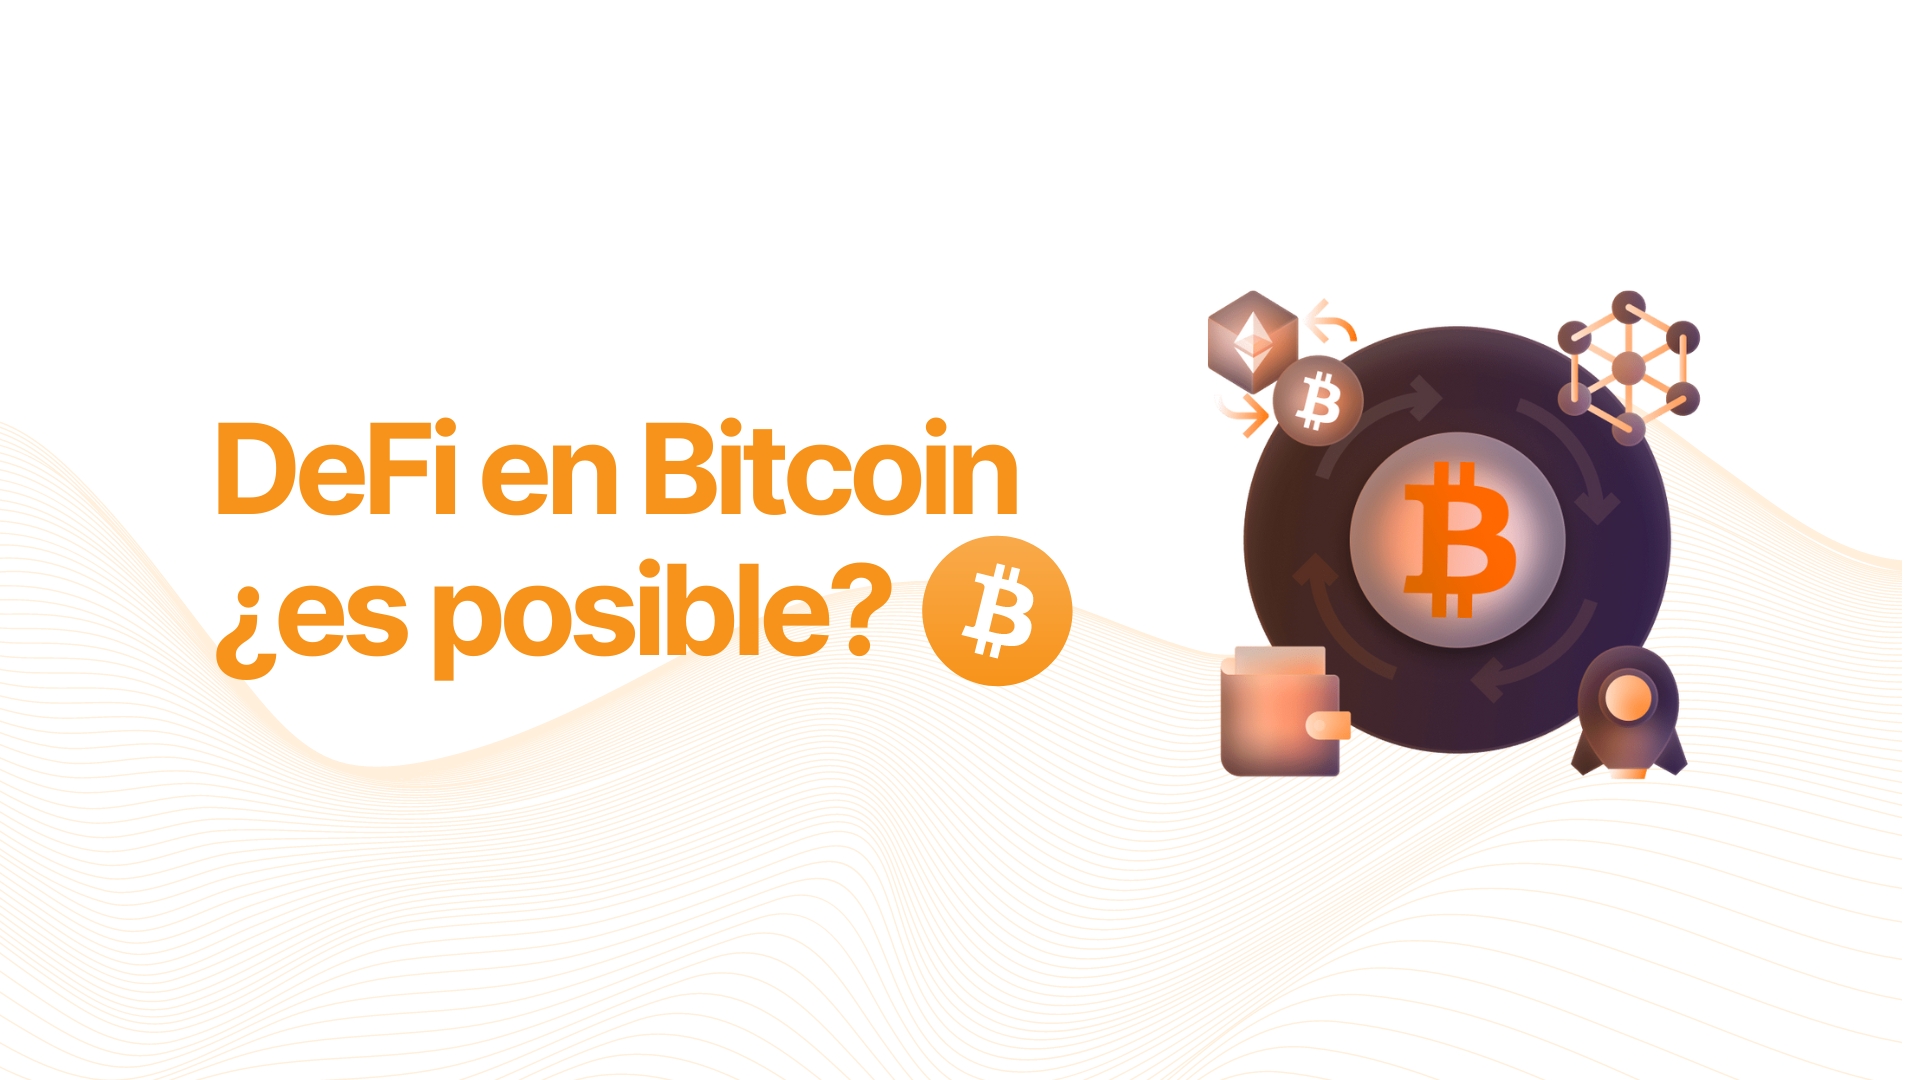 ¿Defi en Bitcoin es posible?